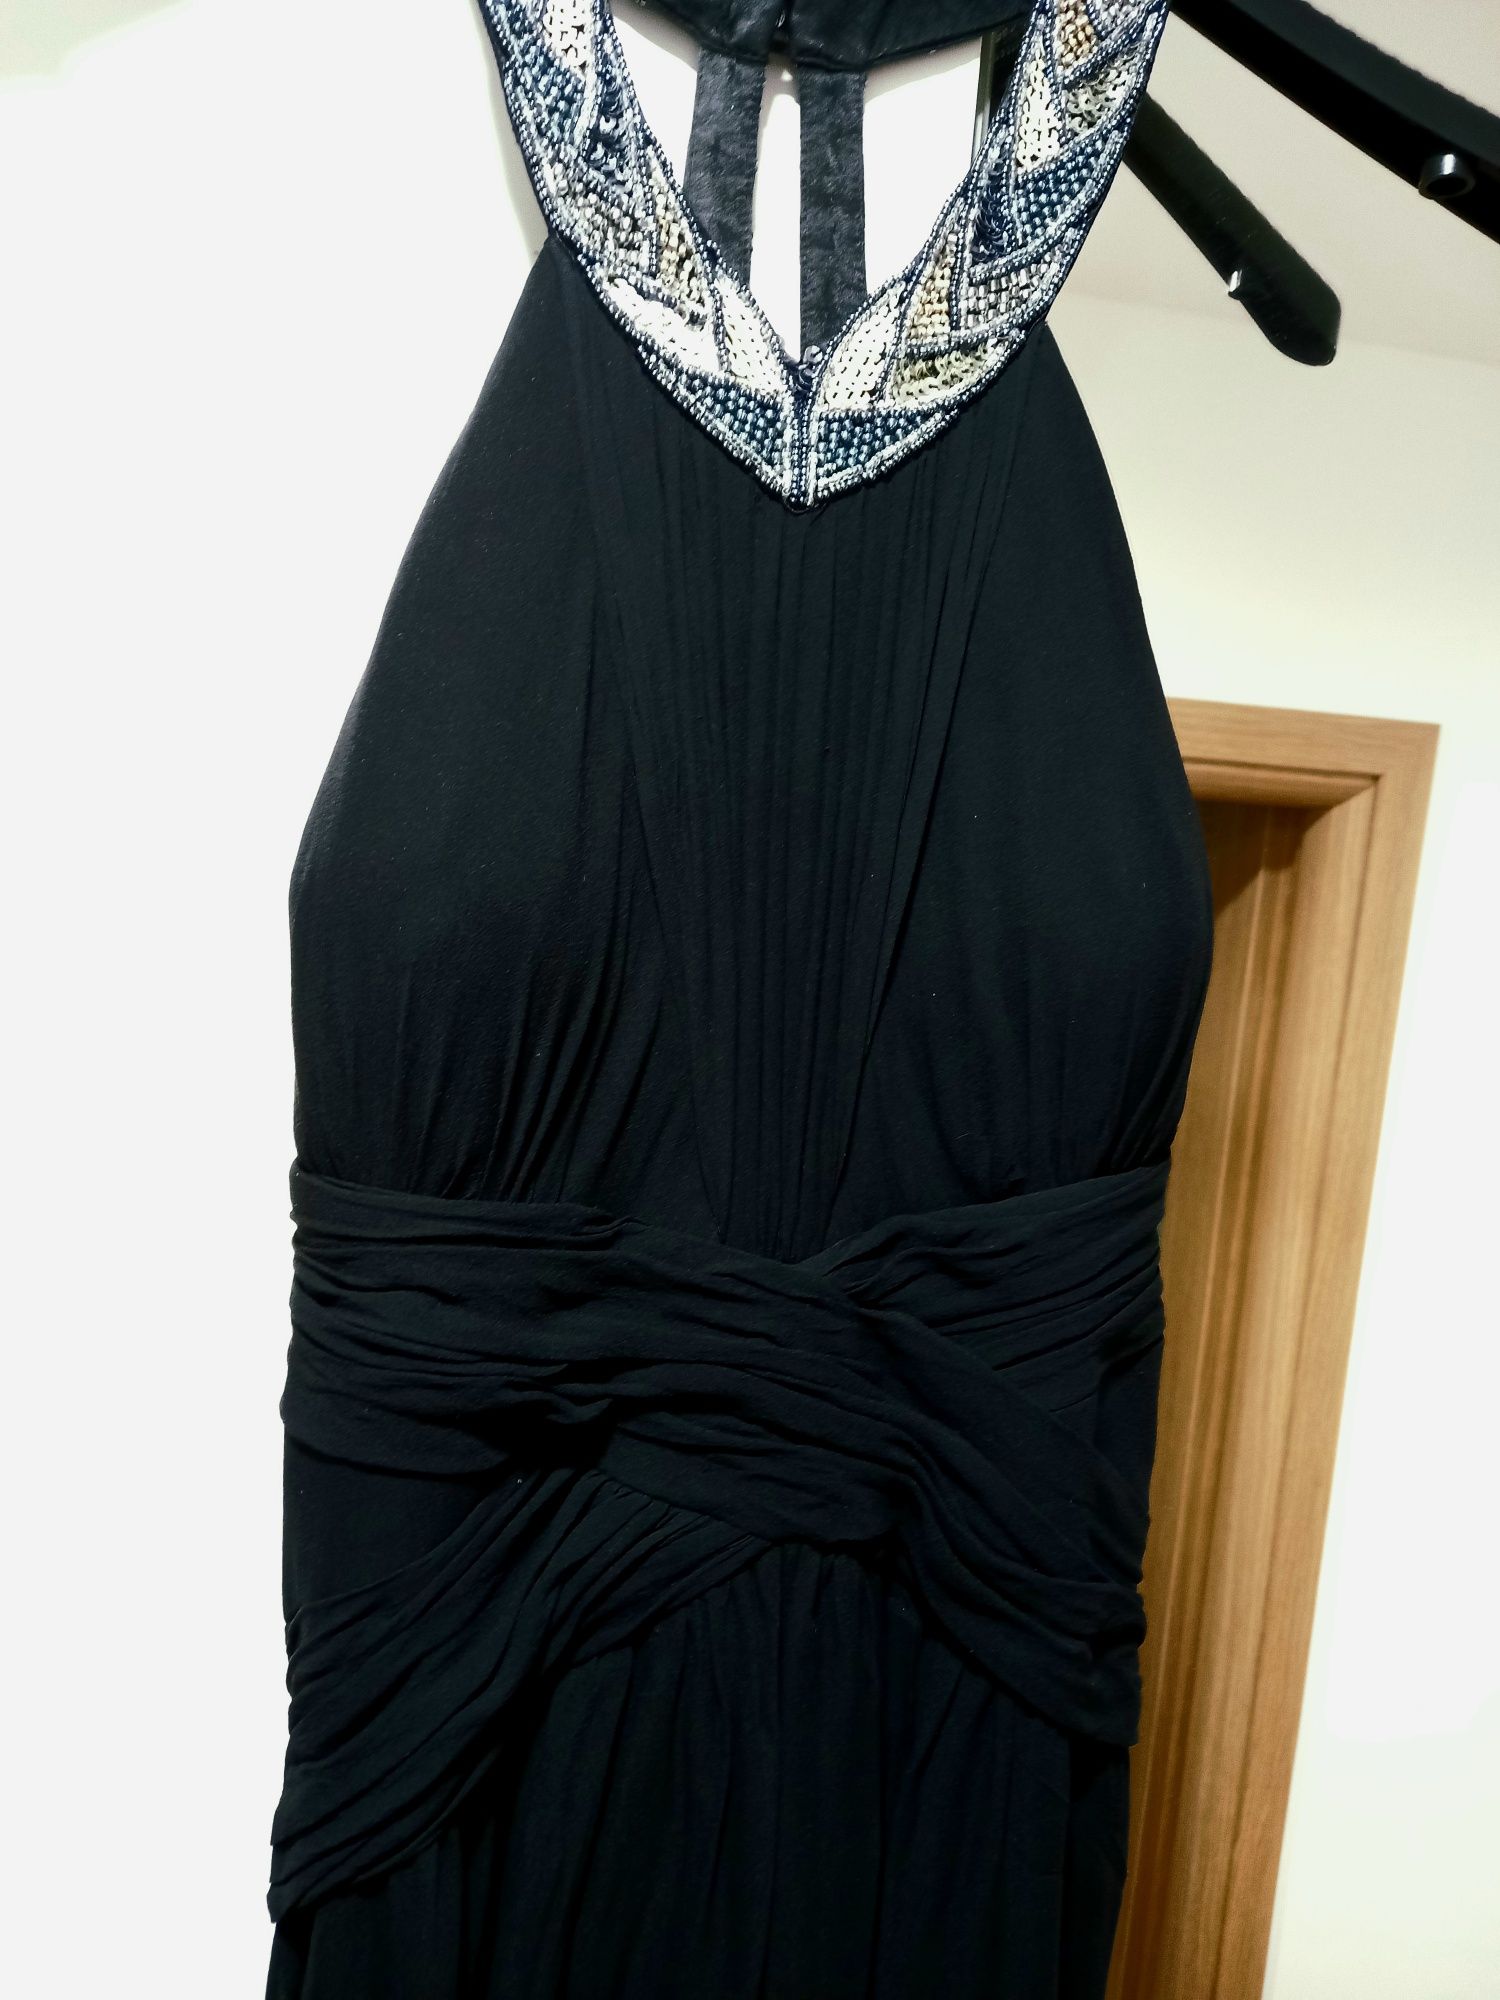 Zdobiona suknia z wyciętymi plecami r38-40, wzrost ok 170cm